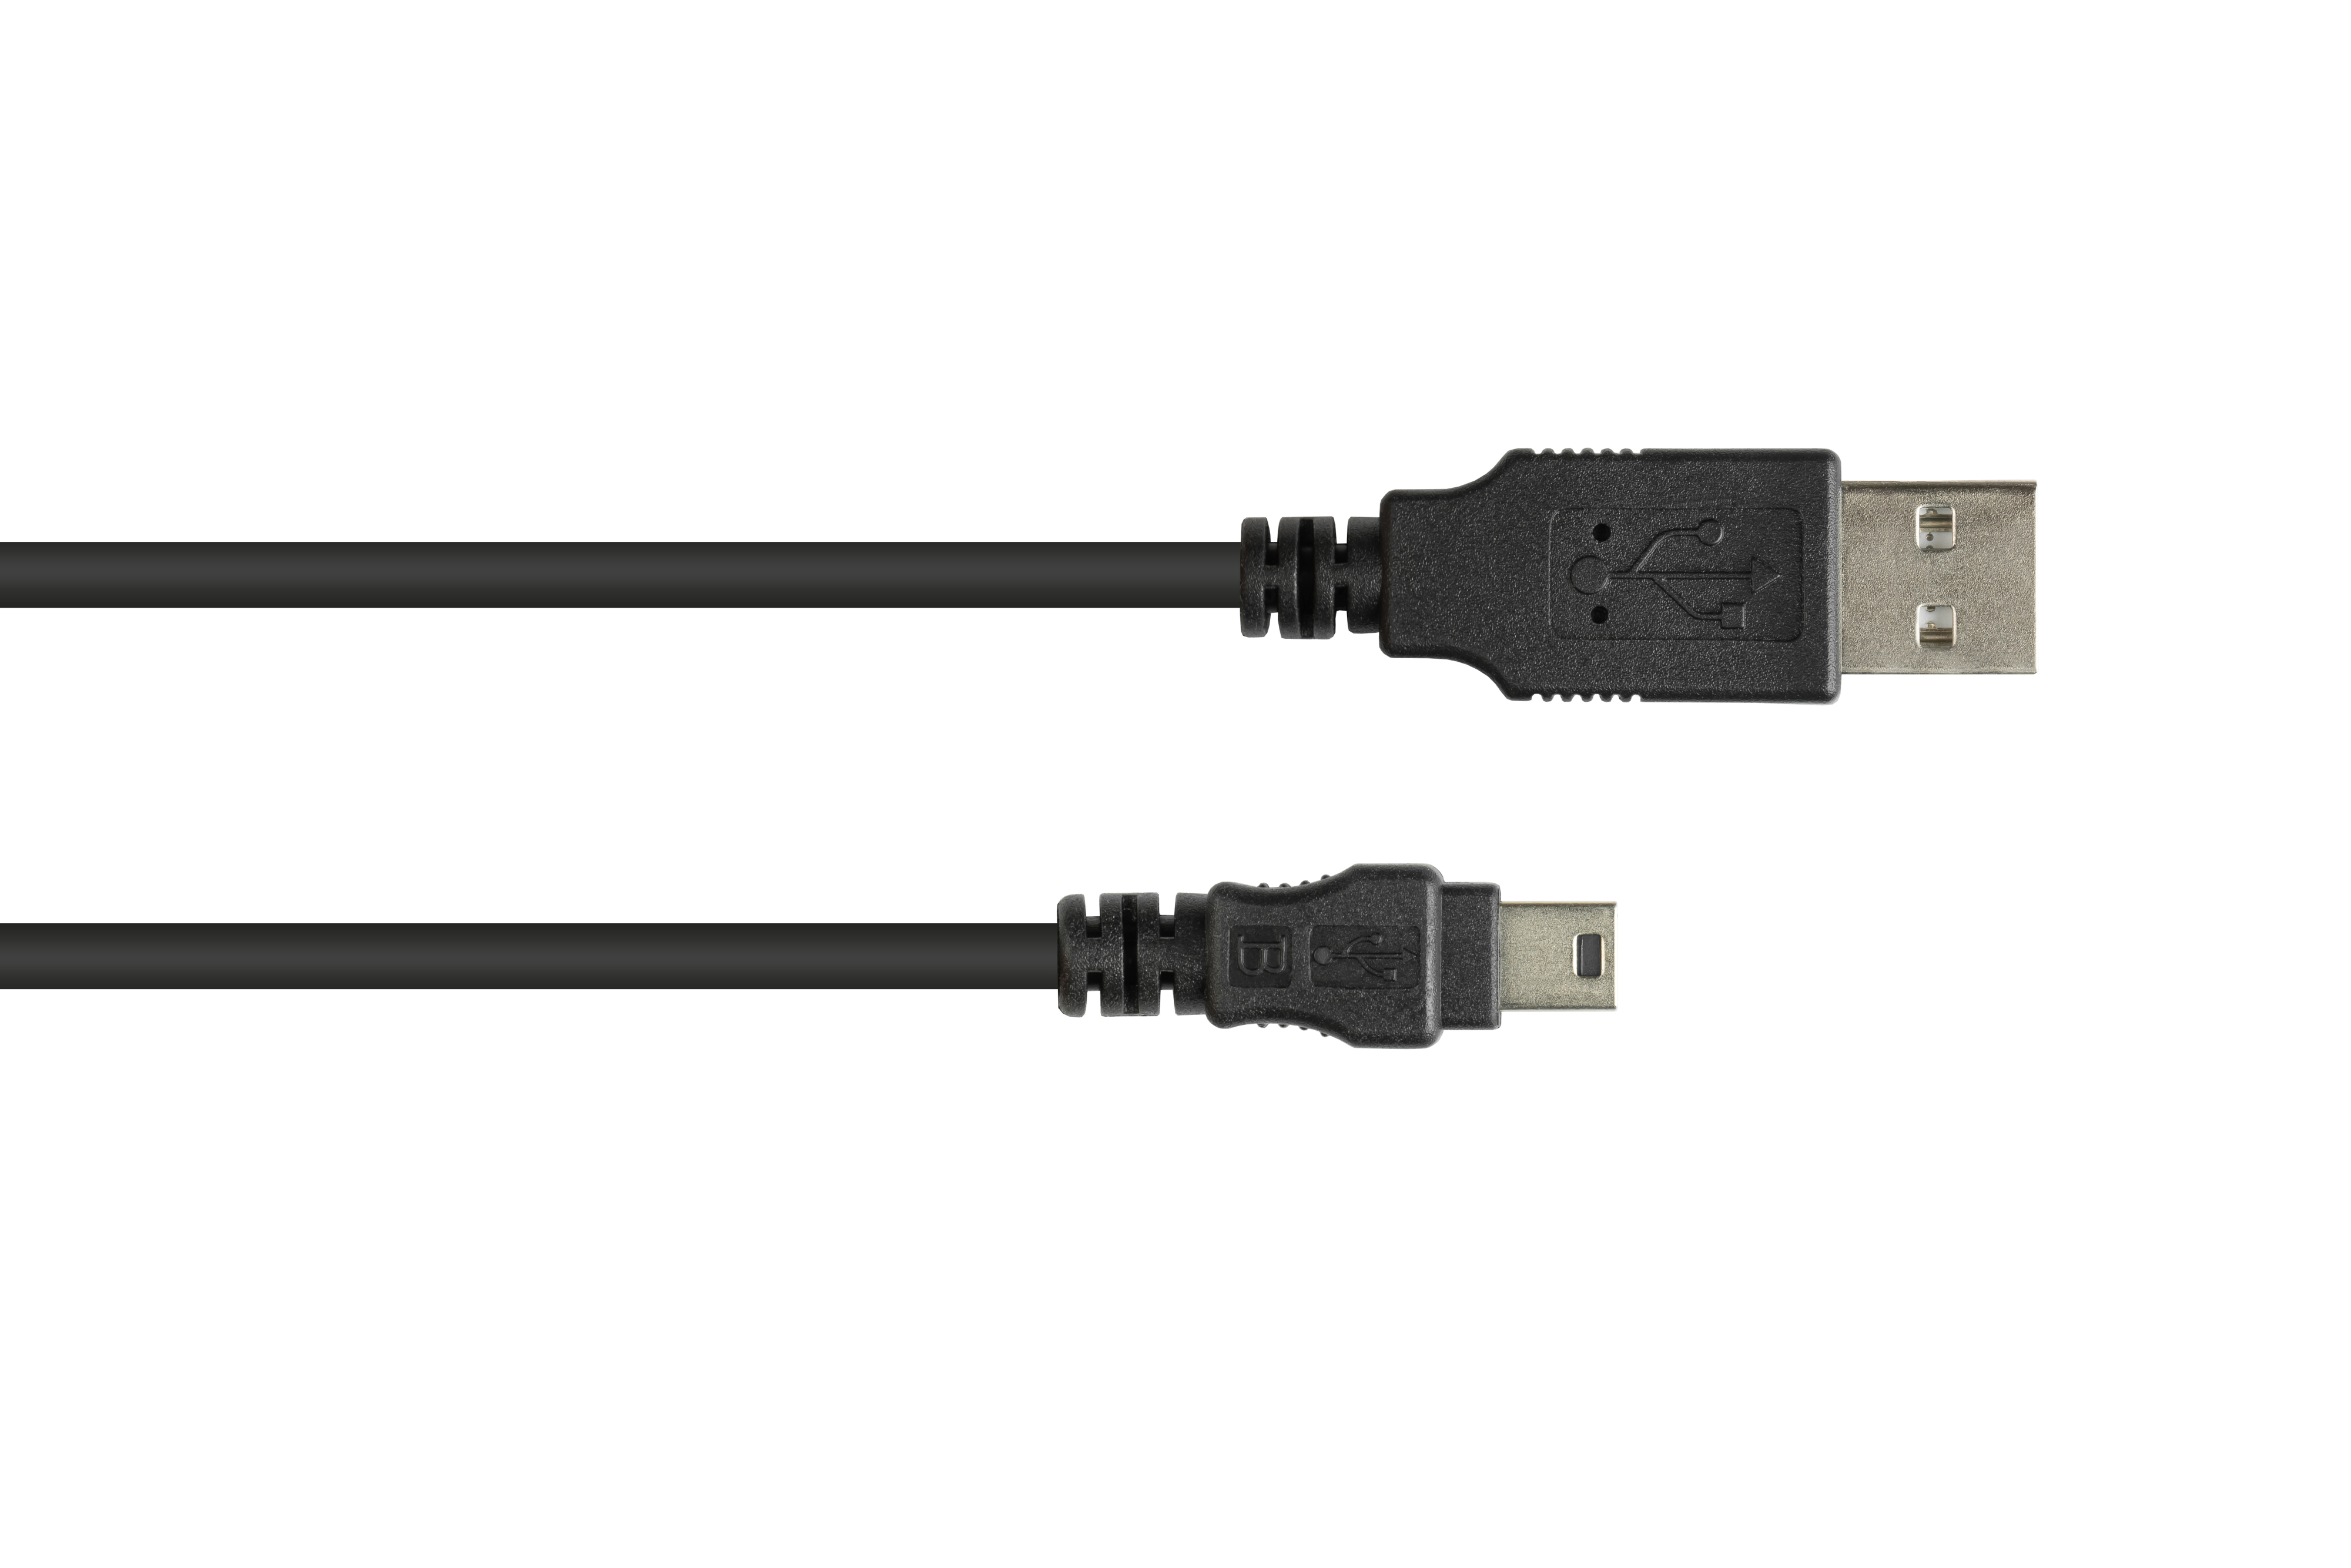 A CONNECTIONS 5-pin, Stecker Anschlusskabel schwarz Stecker 2.0 GOOD an B Mini USB